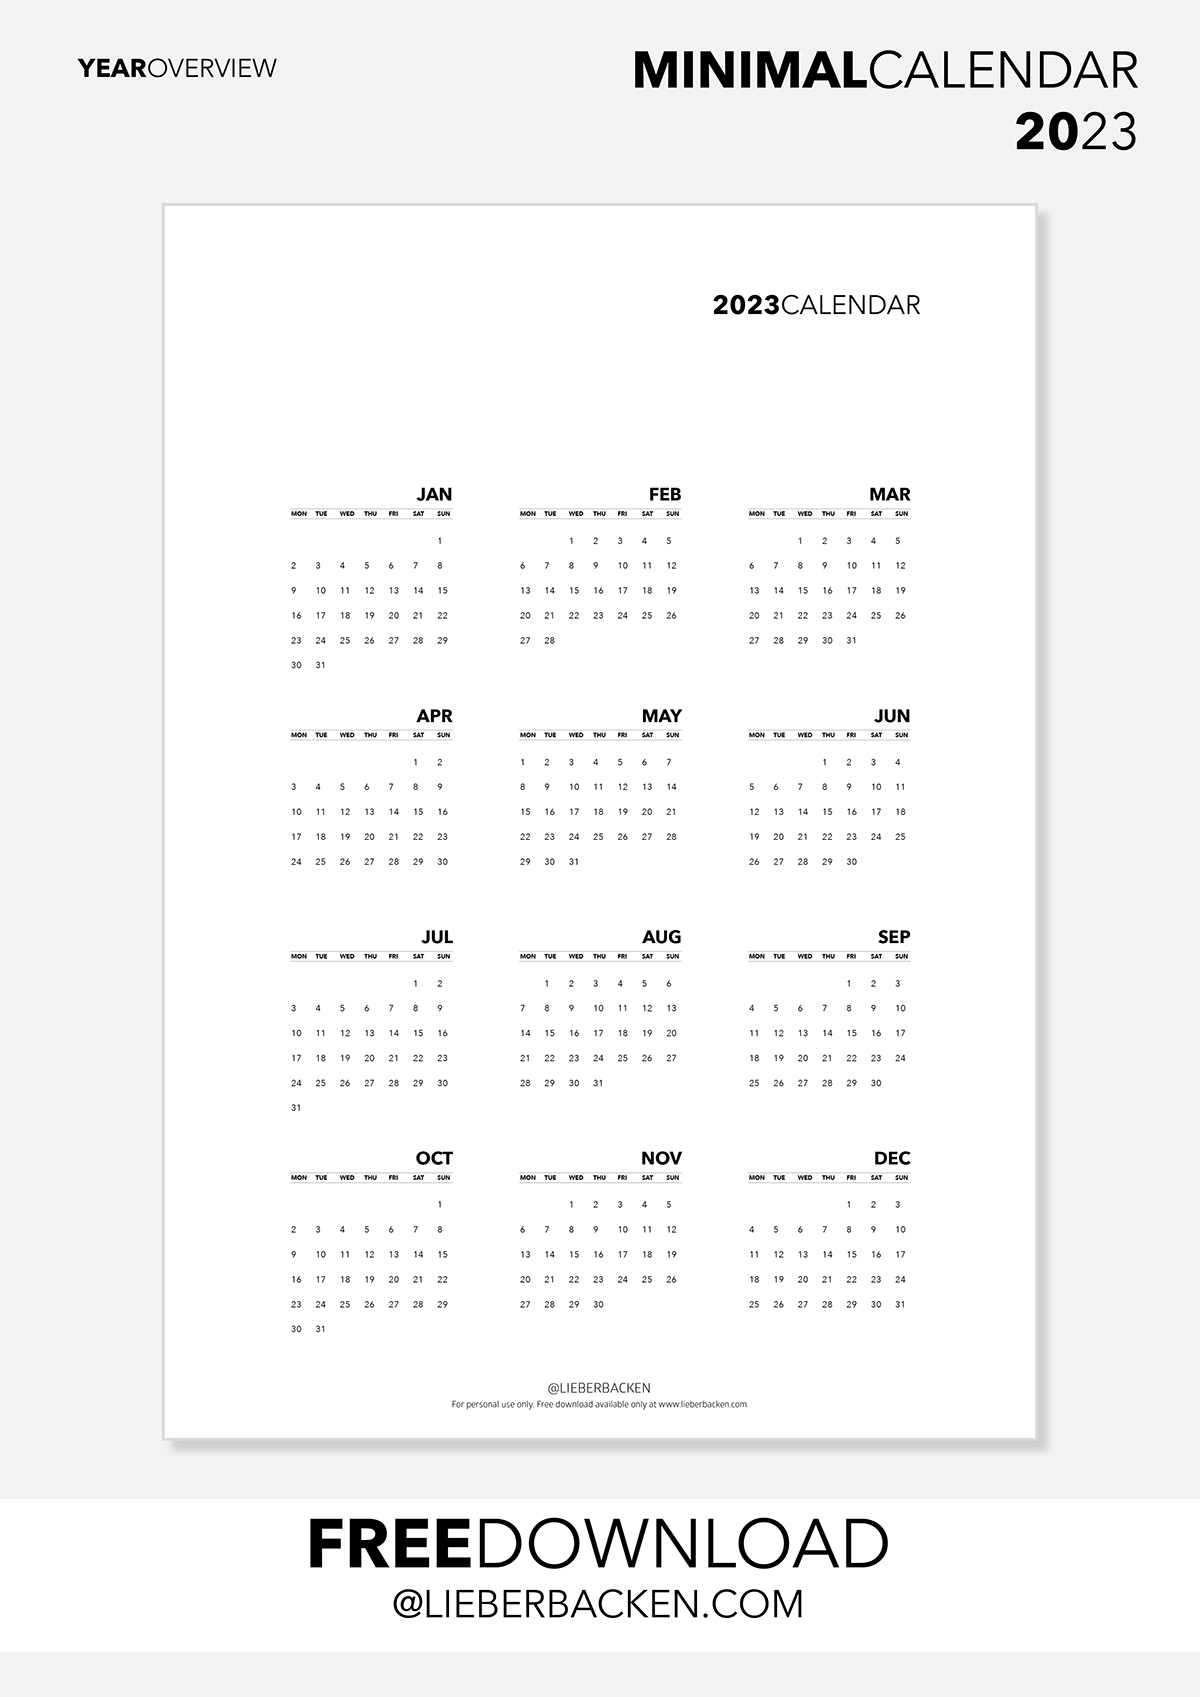 Year Overview | Gratis Kalender 2023 kostenfreier Download